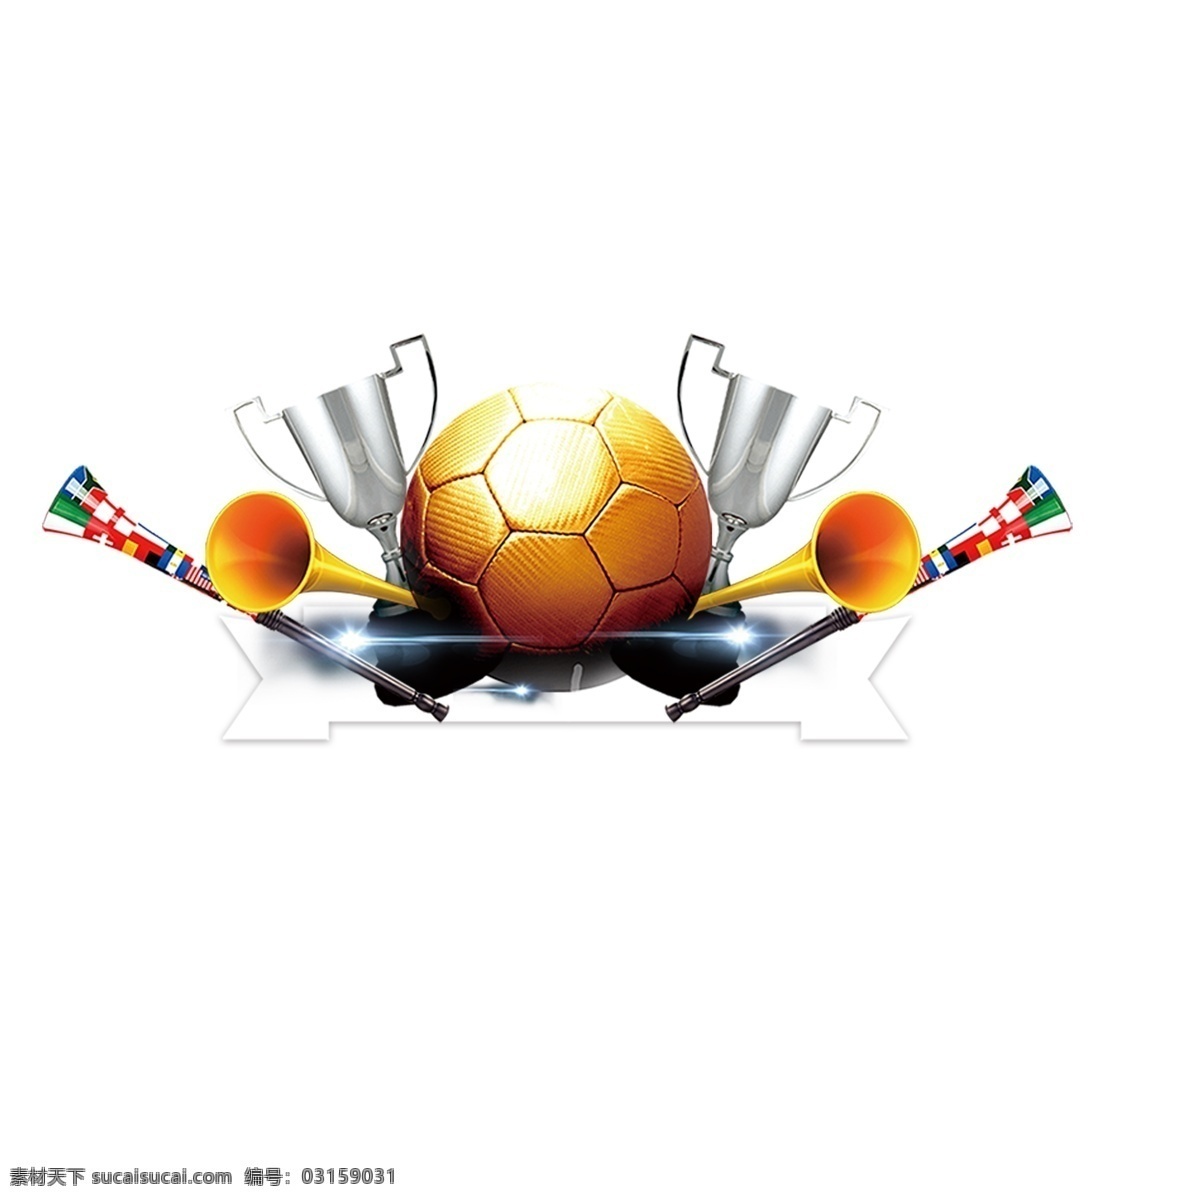 世界杯 足球 喝彩 装饰 免 扣 图 卡通足球 奖杯 喇叭 喝彩的装饰 免扣图